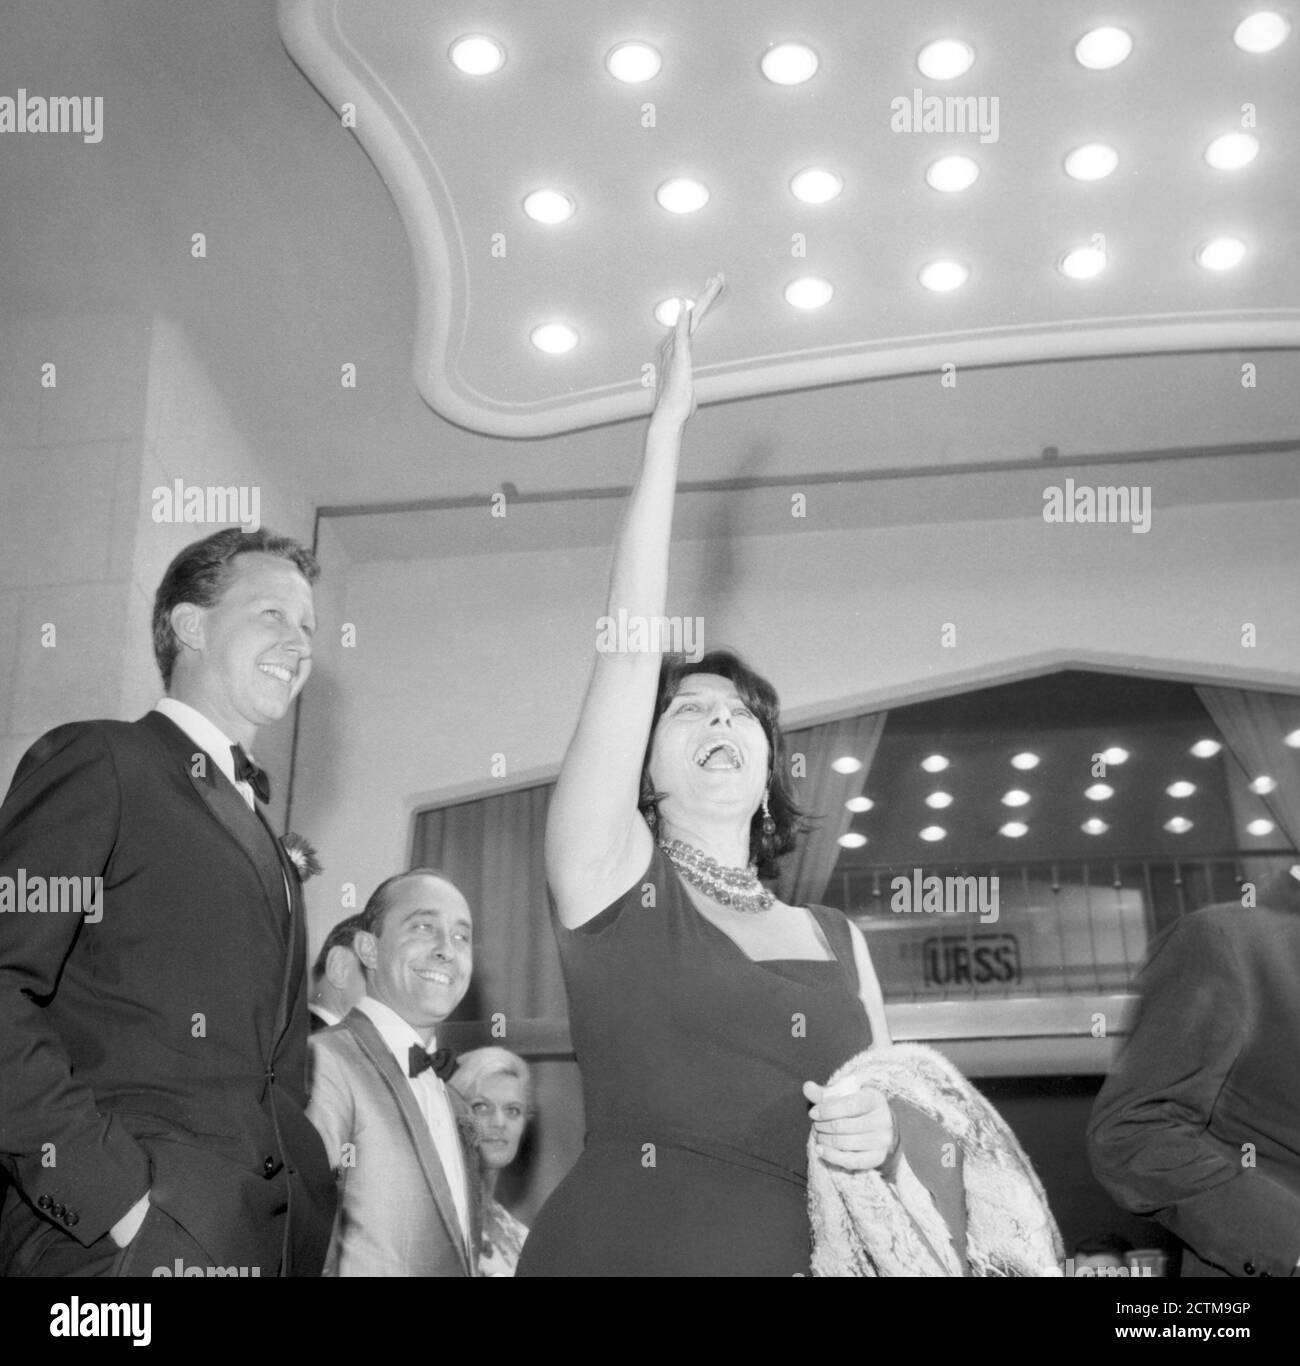 The actresses Anna Magnani (left) at 22nd Venice International Film Festival, Venice, August 1961  --- Venezia, Agosto 1961 22a Mostra Internazionale d'Arte Cinematografica di Venezia. Nella foto: Anna Magnani. Stock Photo